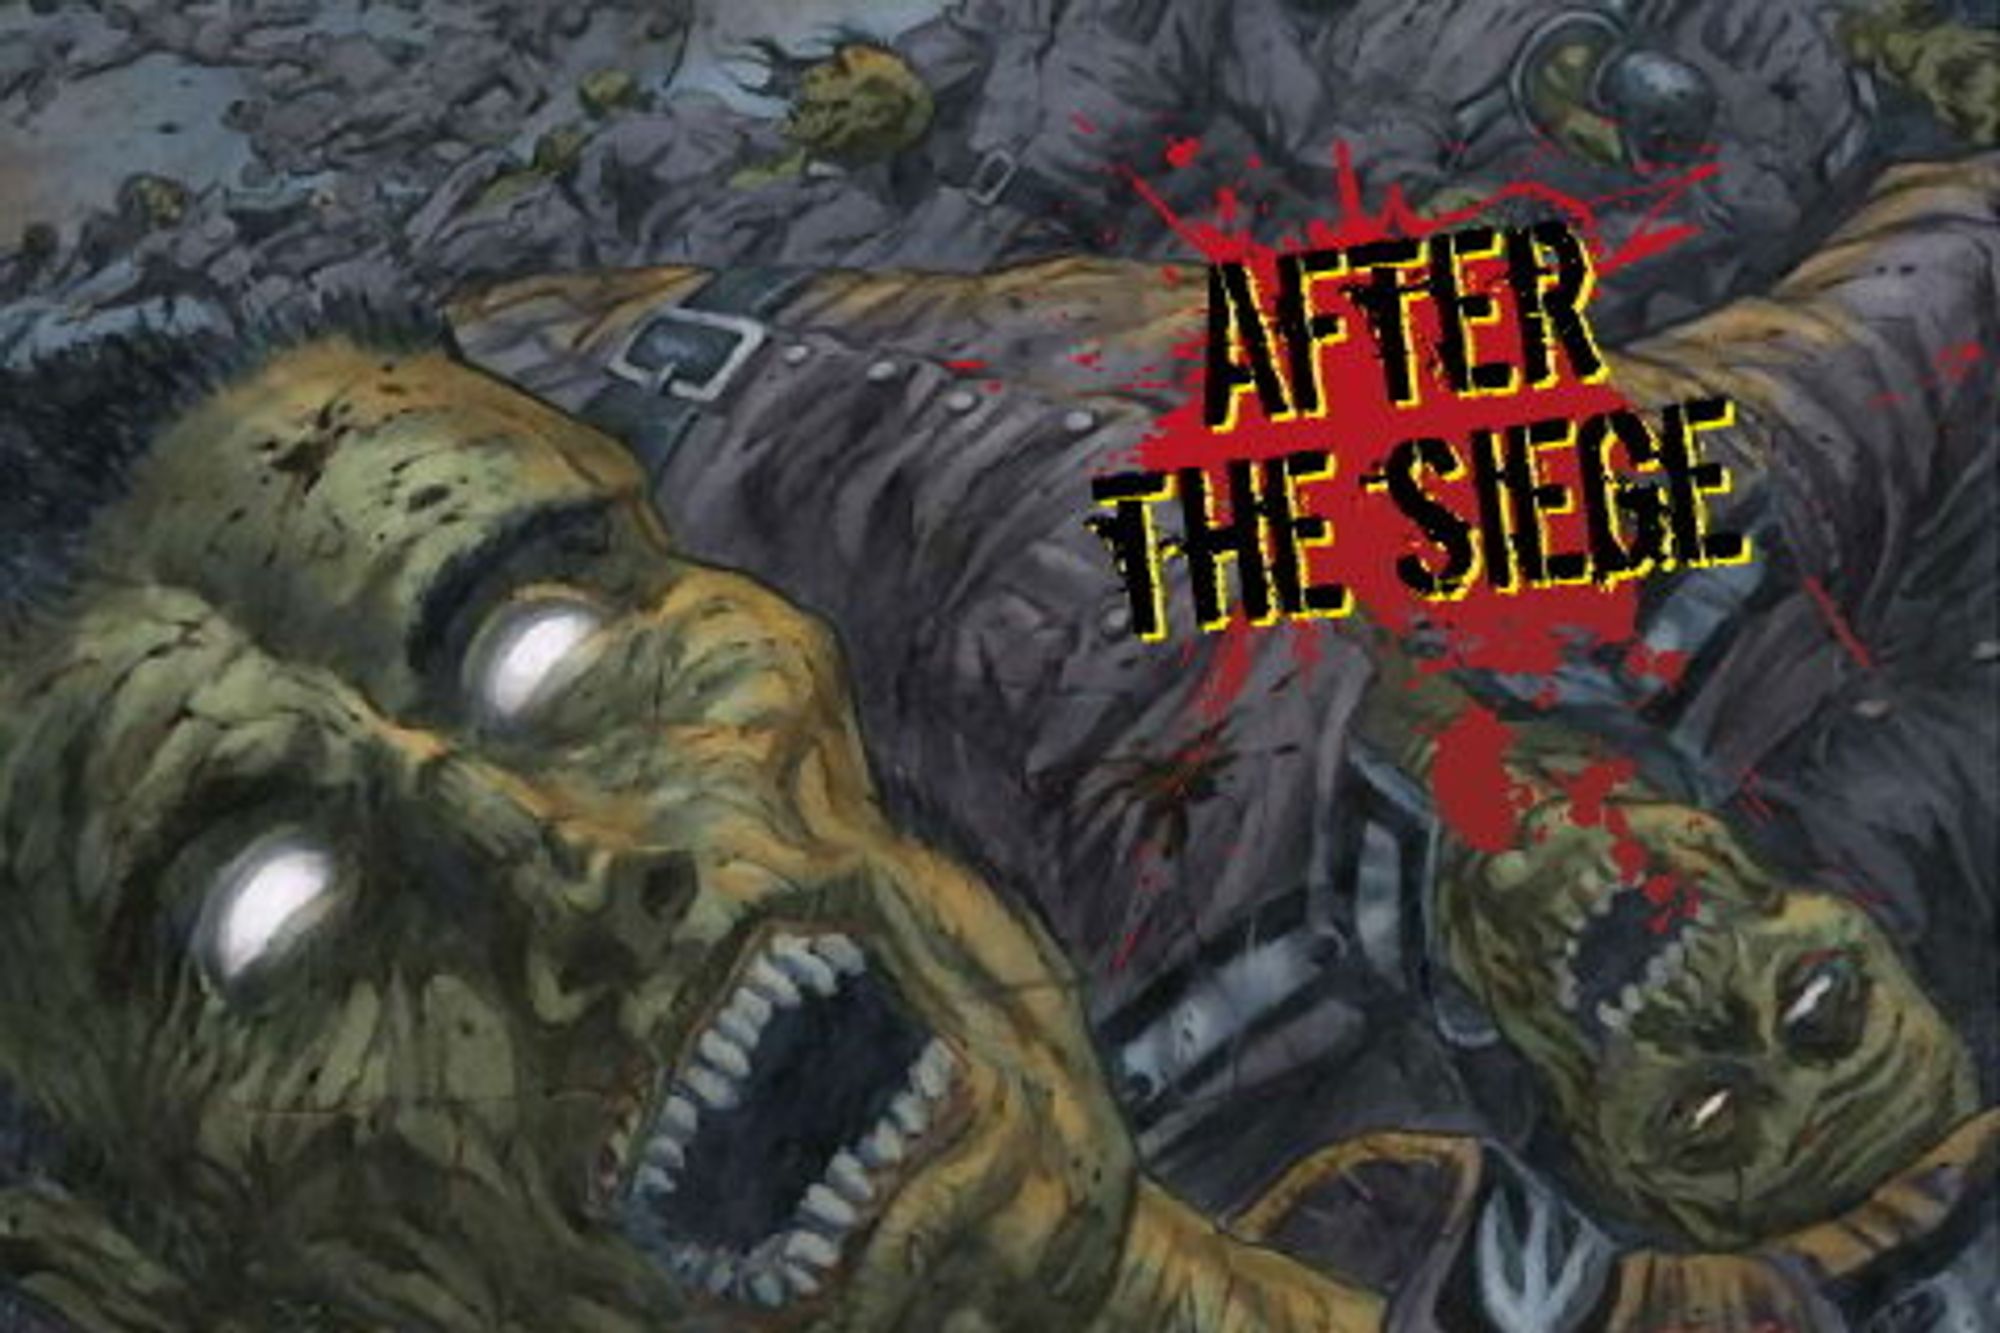 Cory Doctorows novelle «After the siege» ble lisensiert til tegneserieforlaget IDW, og tegneserien ble lansert i en egen mobilutgave for iPhone og Android mobiler.